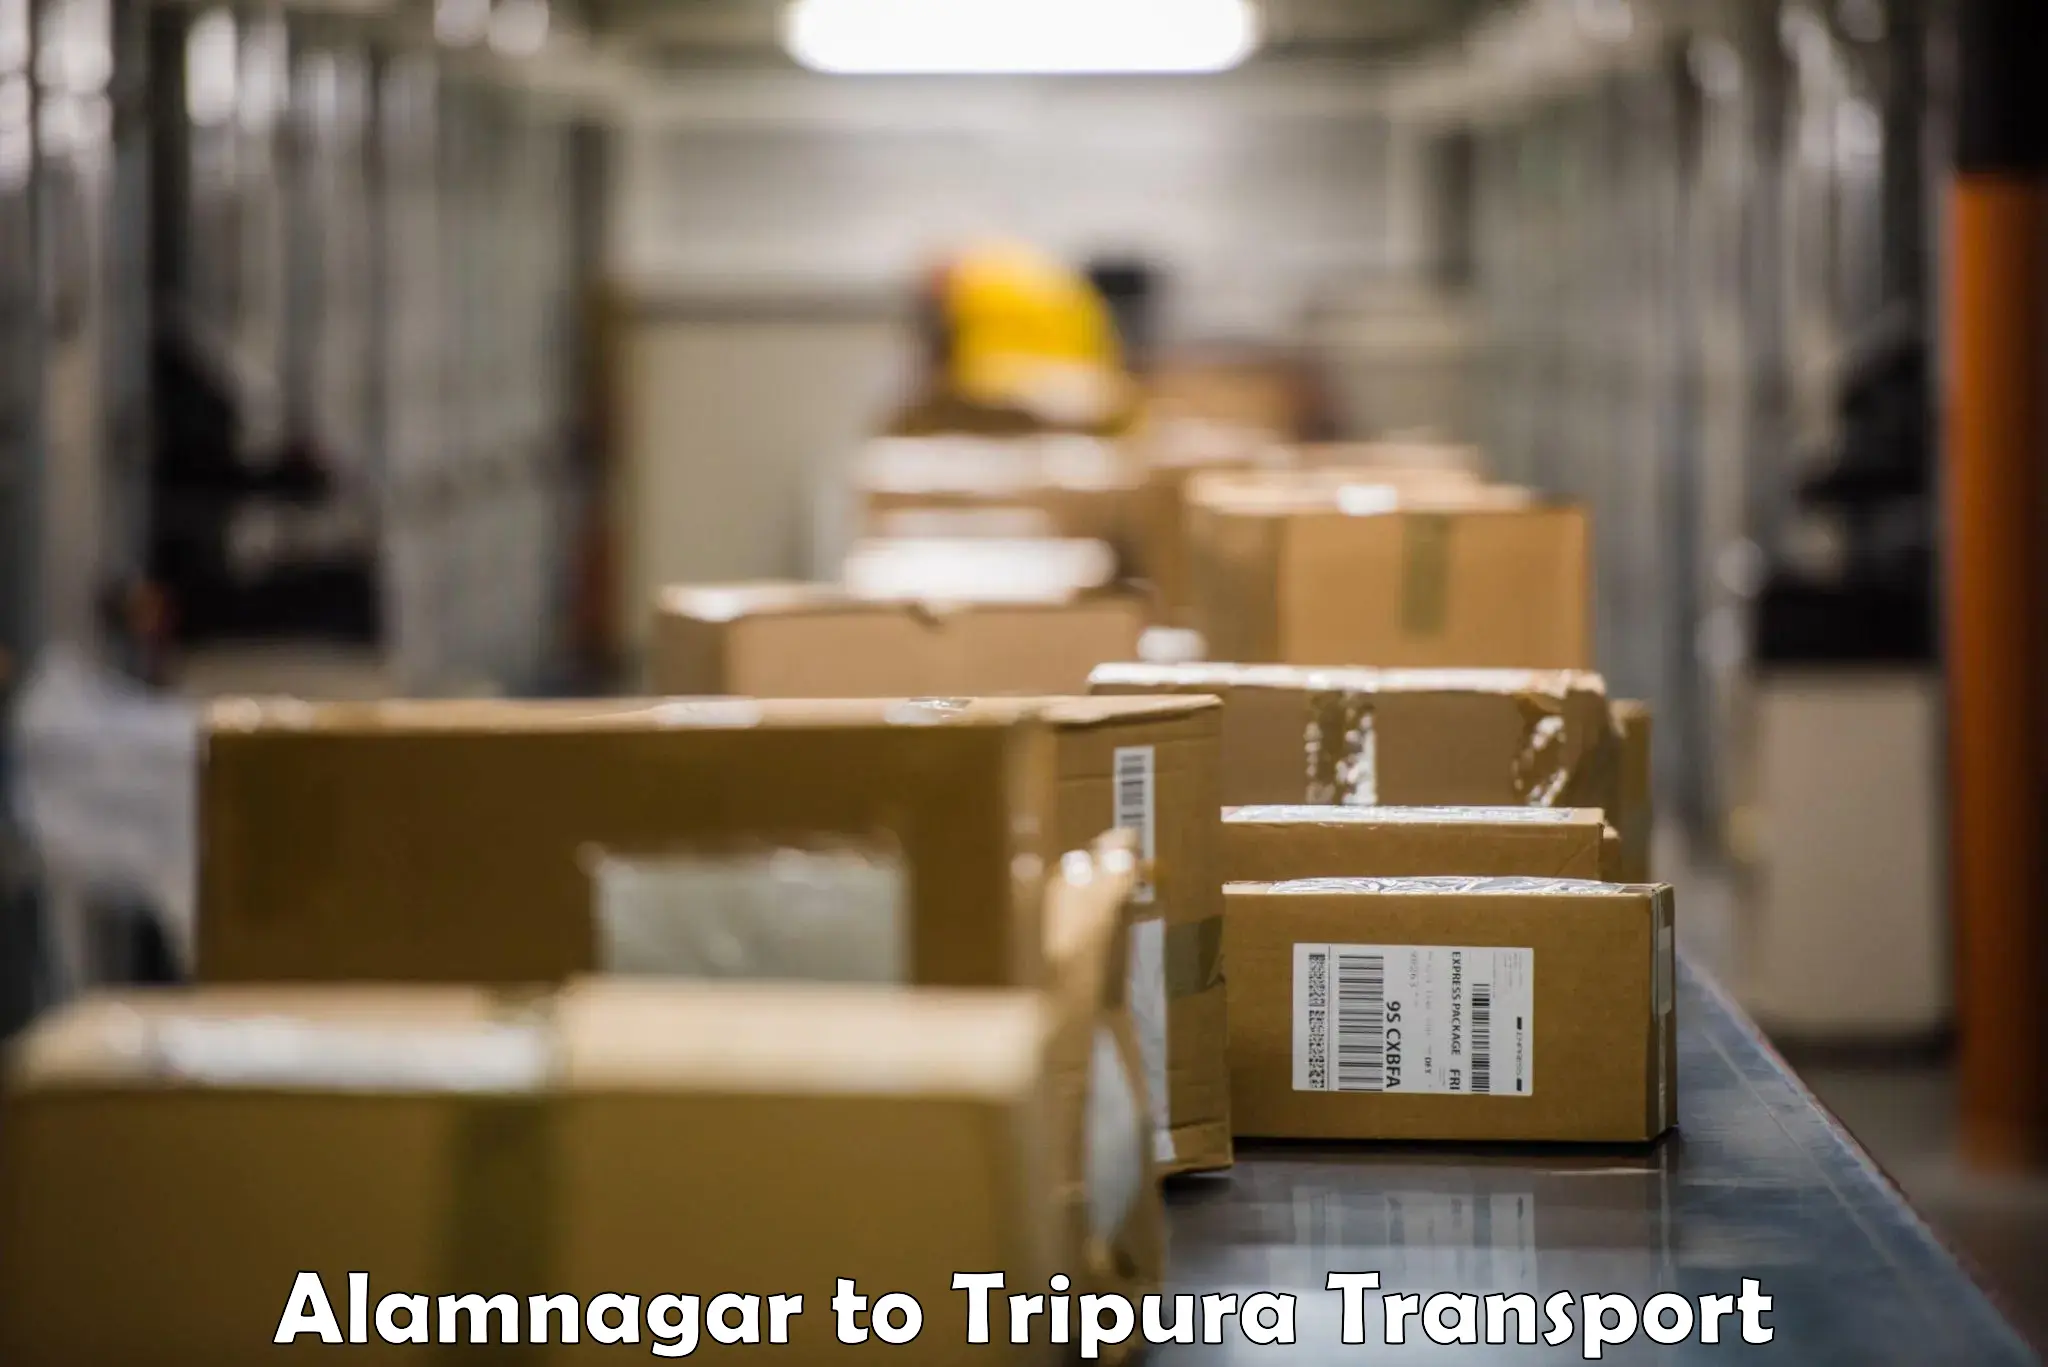 Daily transport service Alamnagar to Aambasa